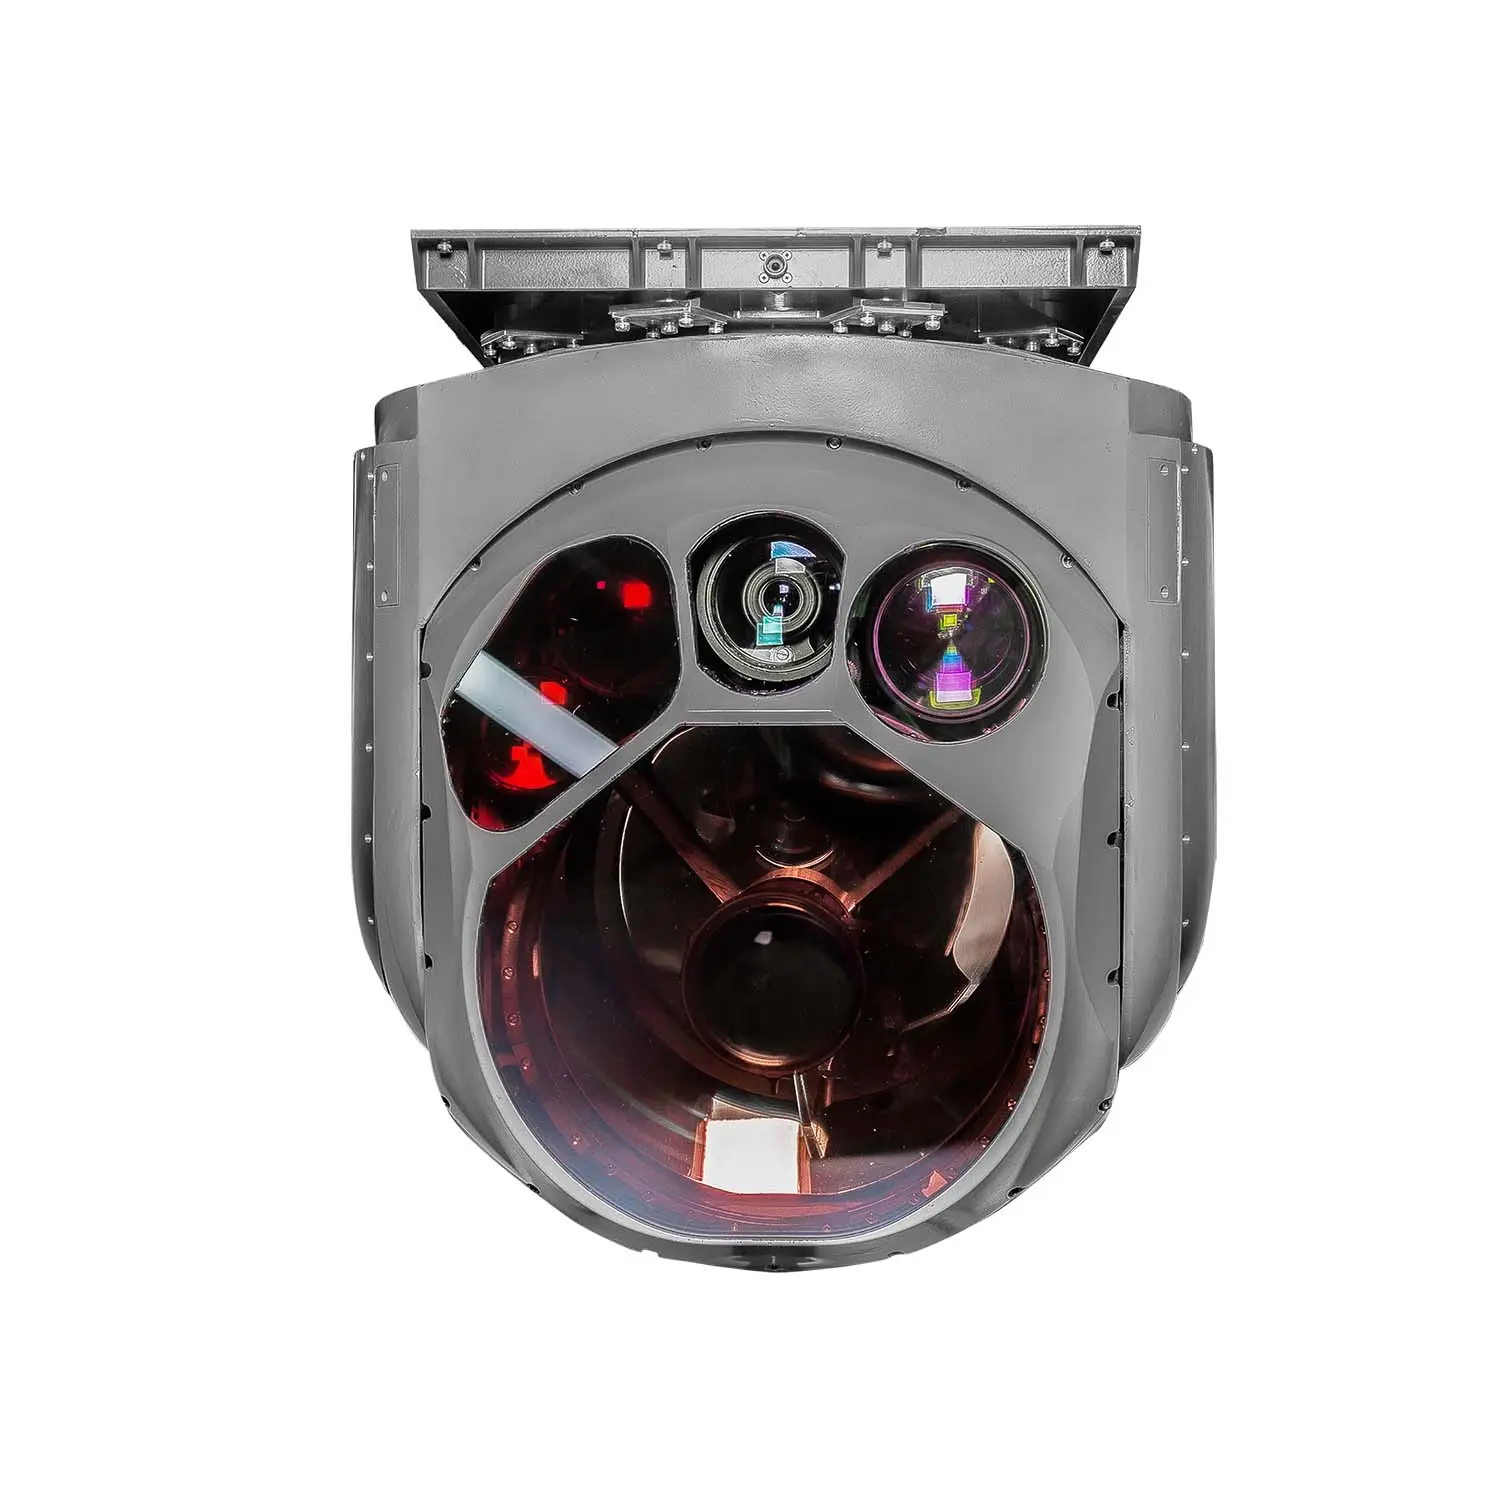 Chengdu honuav EO/IR kamera İha için son tasarım üstün kalite Mini Video güvenlik güvenlik kamerası izleme fiyatı